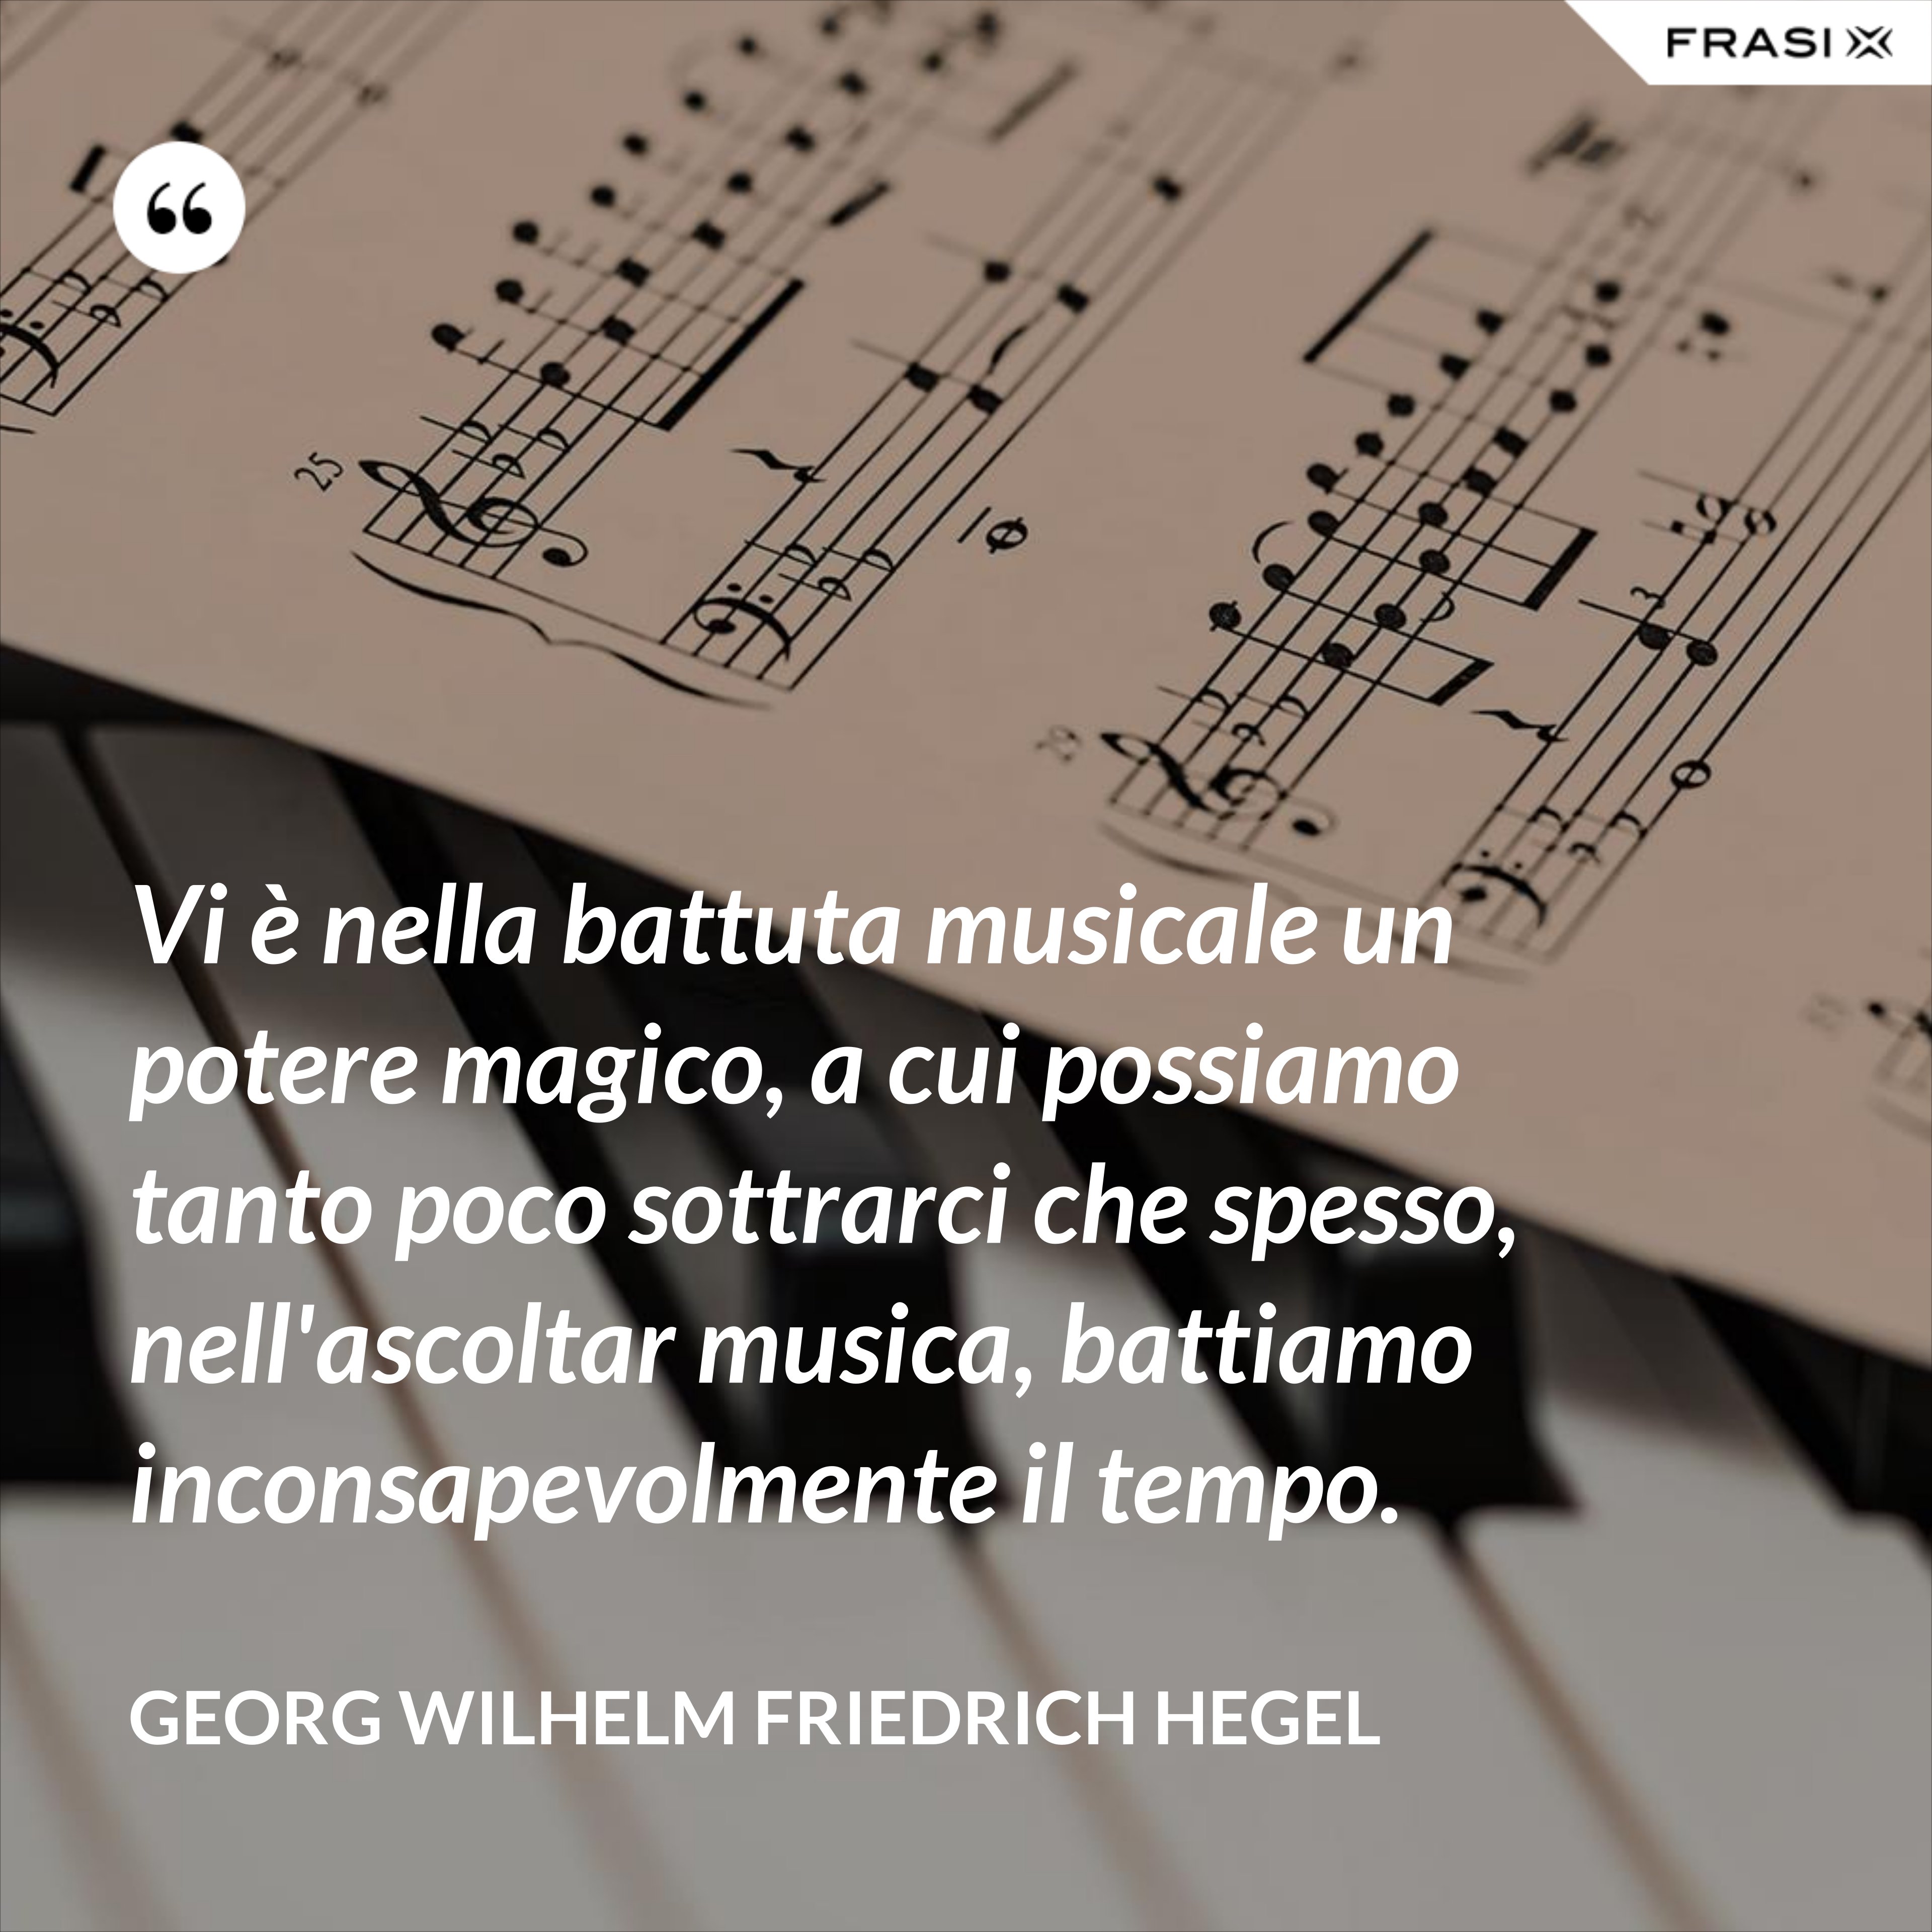 Vi è nella battuta musicale un potere magico, a cui possiamo tanto poco sottrarci che spesso, nell'ascoltar musica, battiamo inconsapevolmente il tempo. - Georg Wilhelm Friedrich Hegel